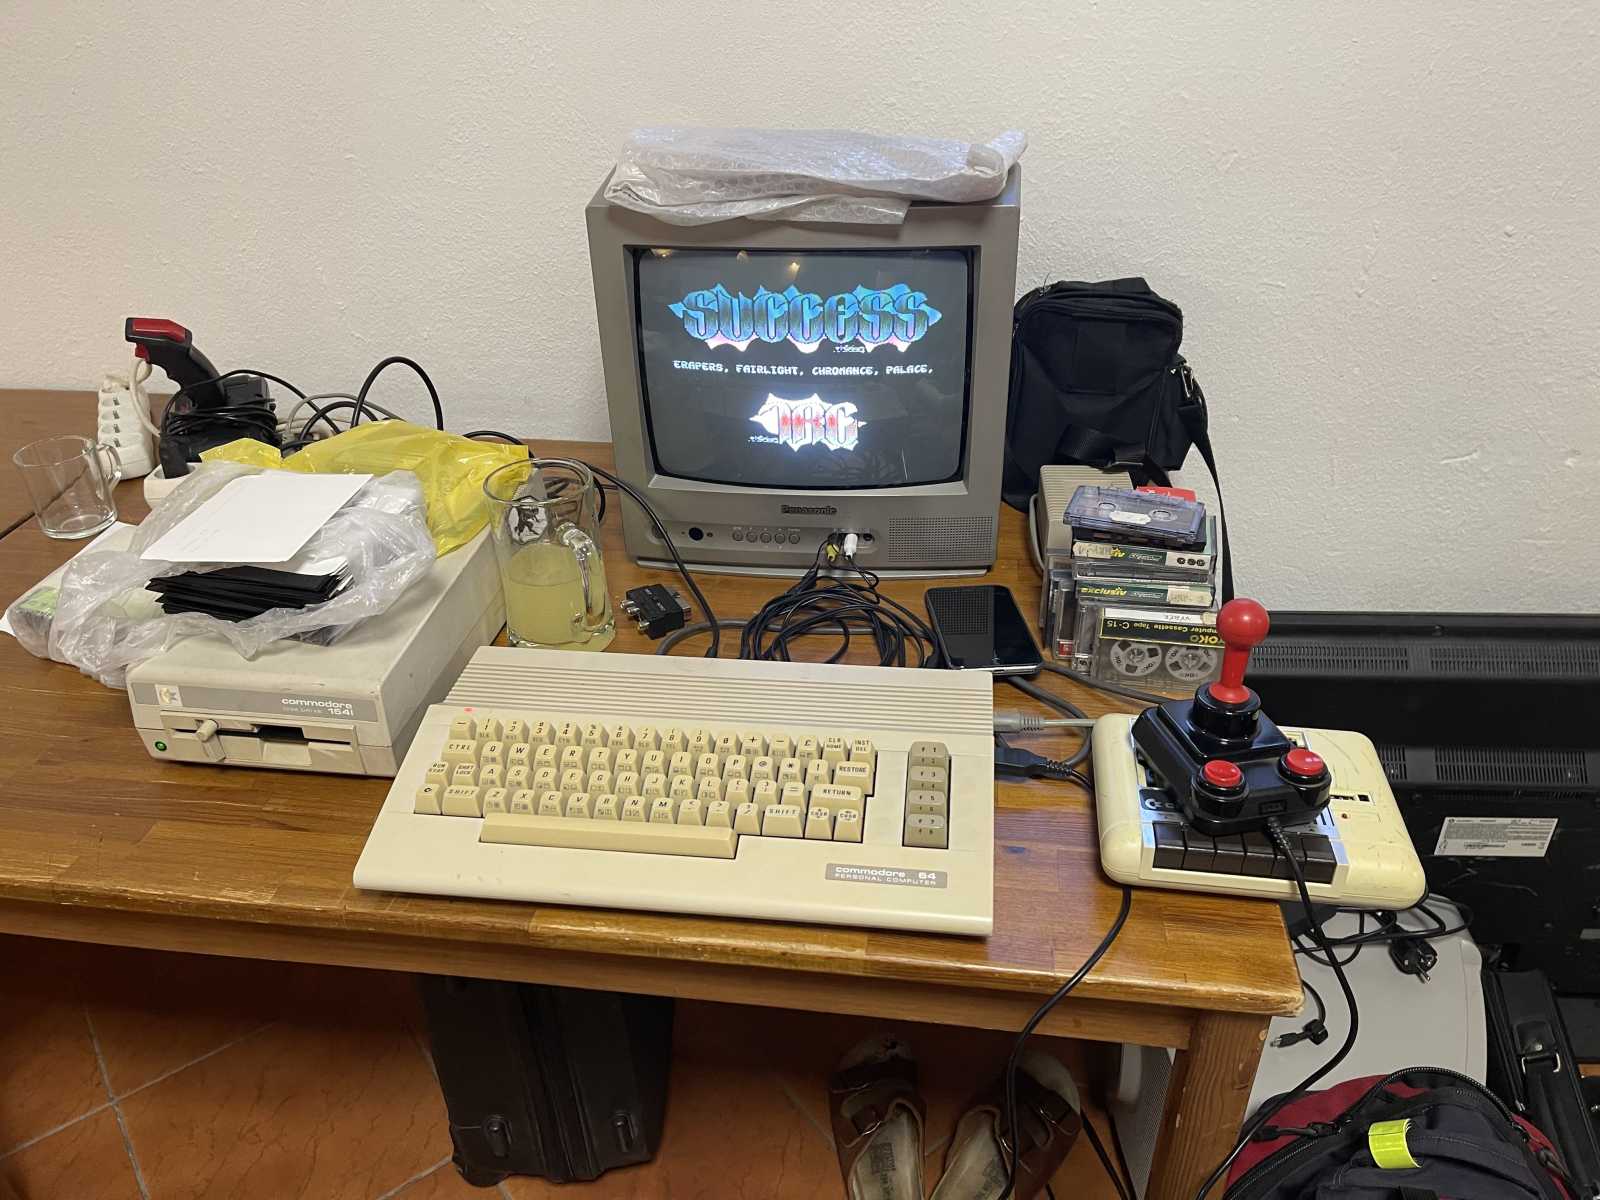 Jak si dnes zahrát na Commodore 64 (i bez něj)